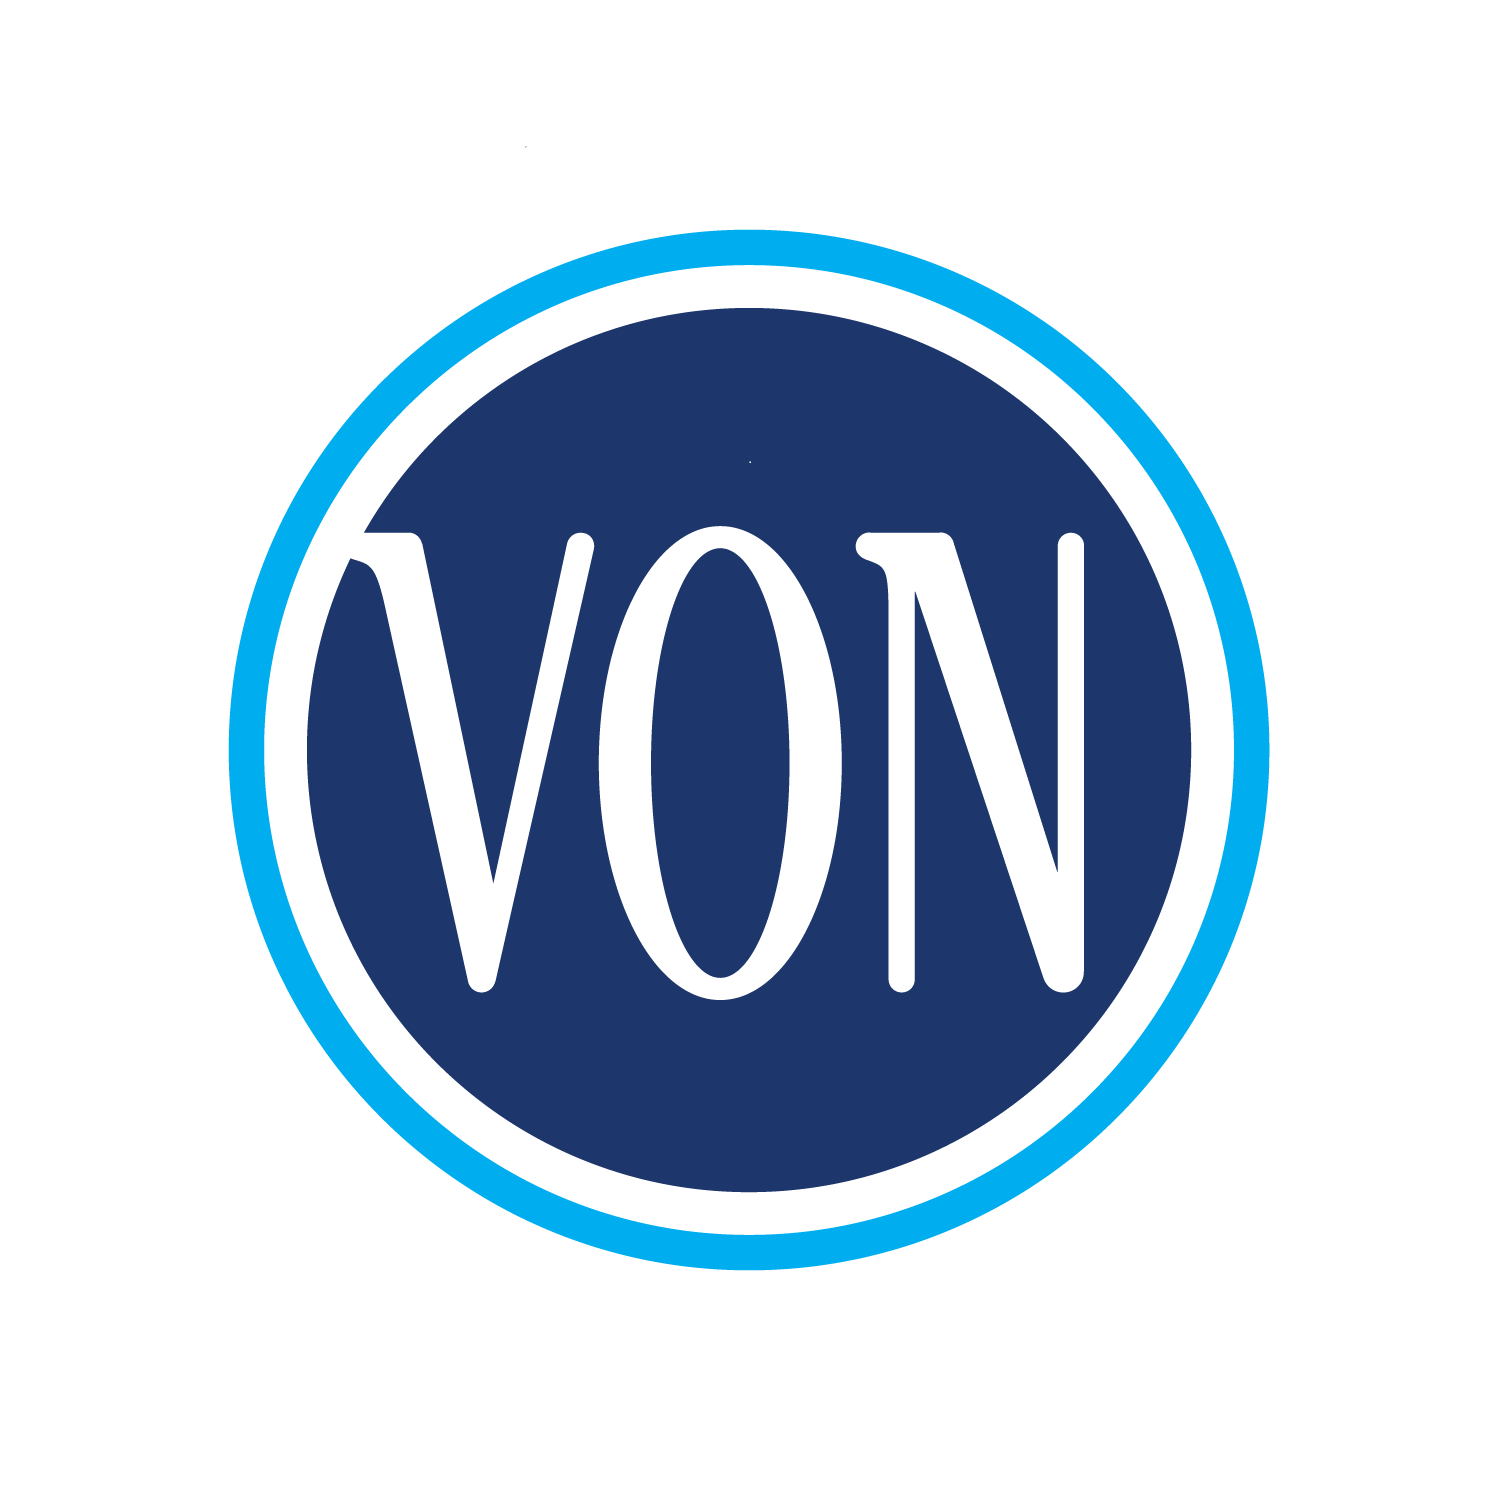 VON Greater Kingston Logo